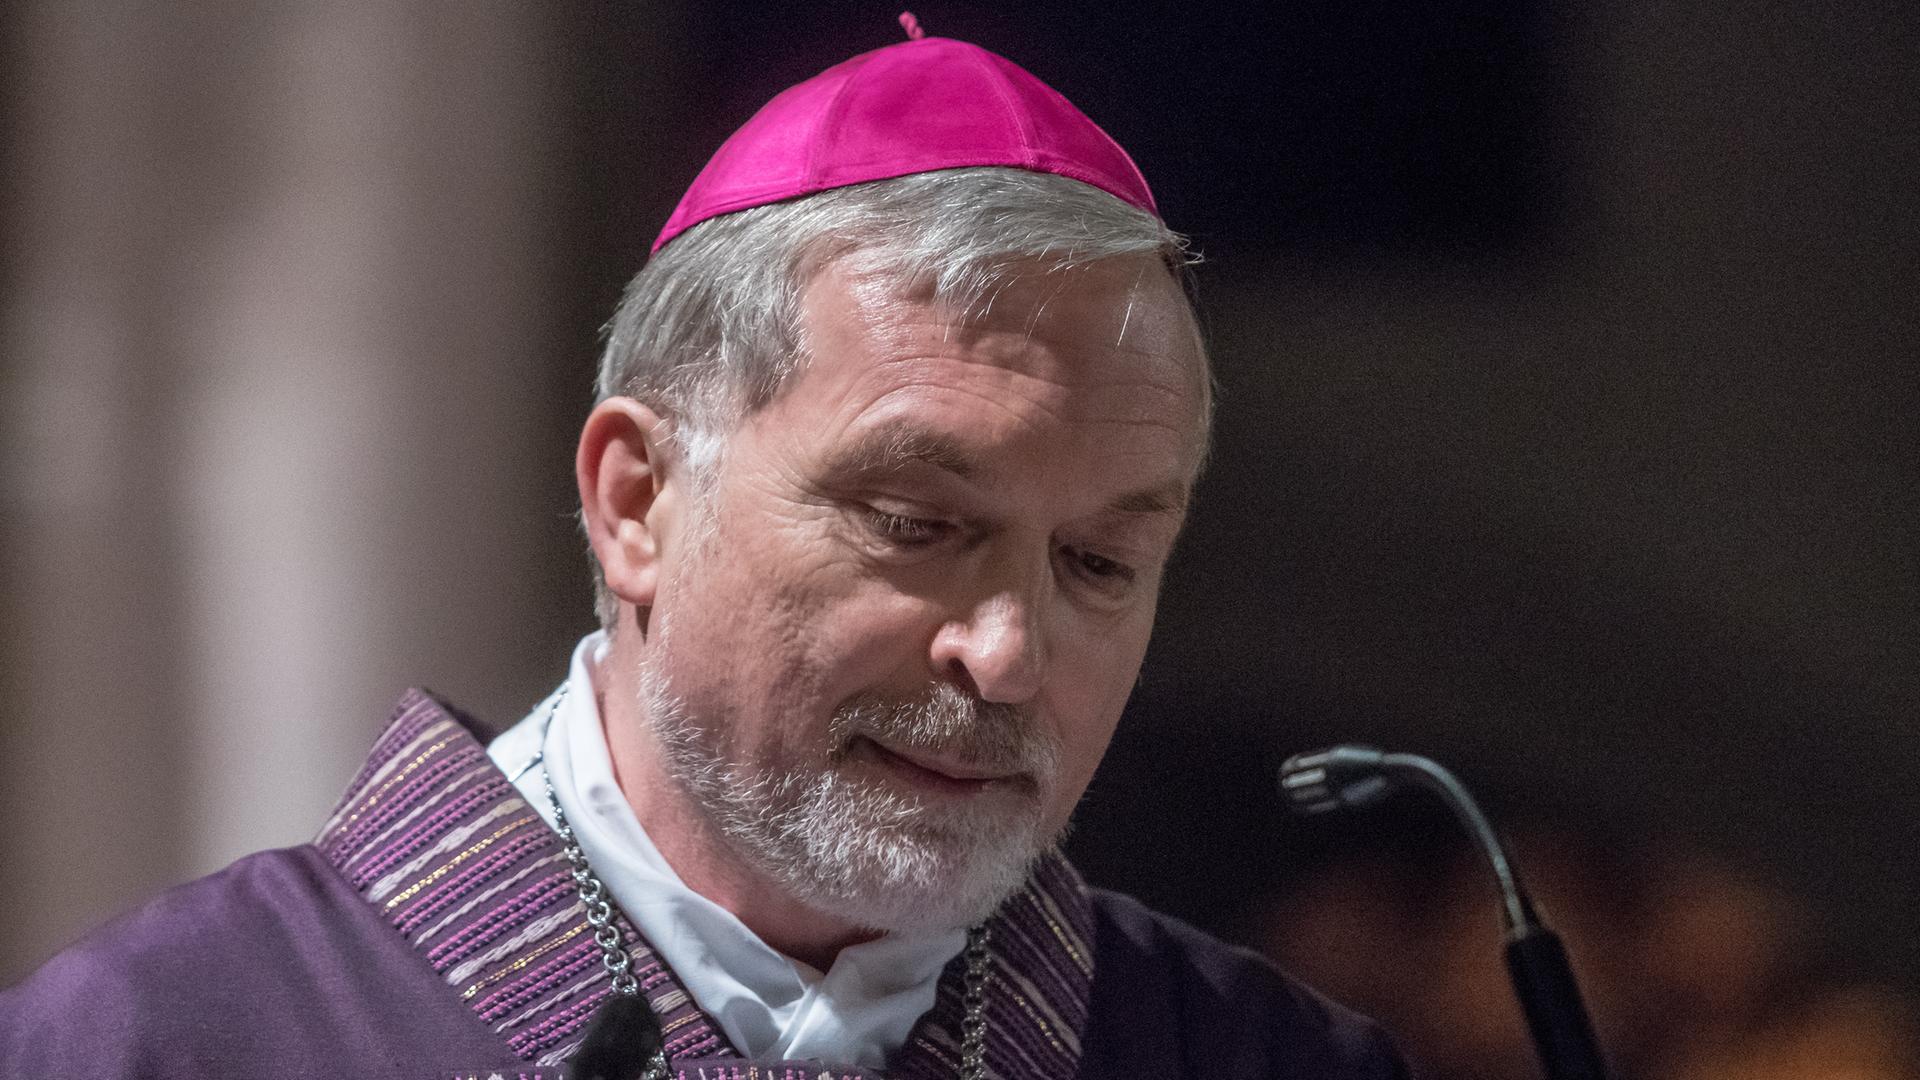 Bischof Gregor Maria Hanke trägt auf dem Bild einen Bart und hat hellgraue Haare. Er trägt in Lila gehaltene Kleidung. 